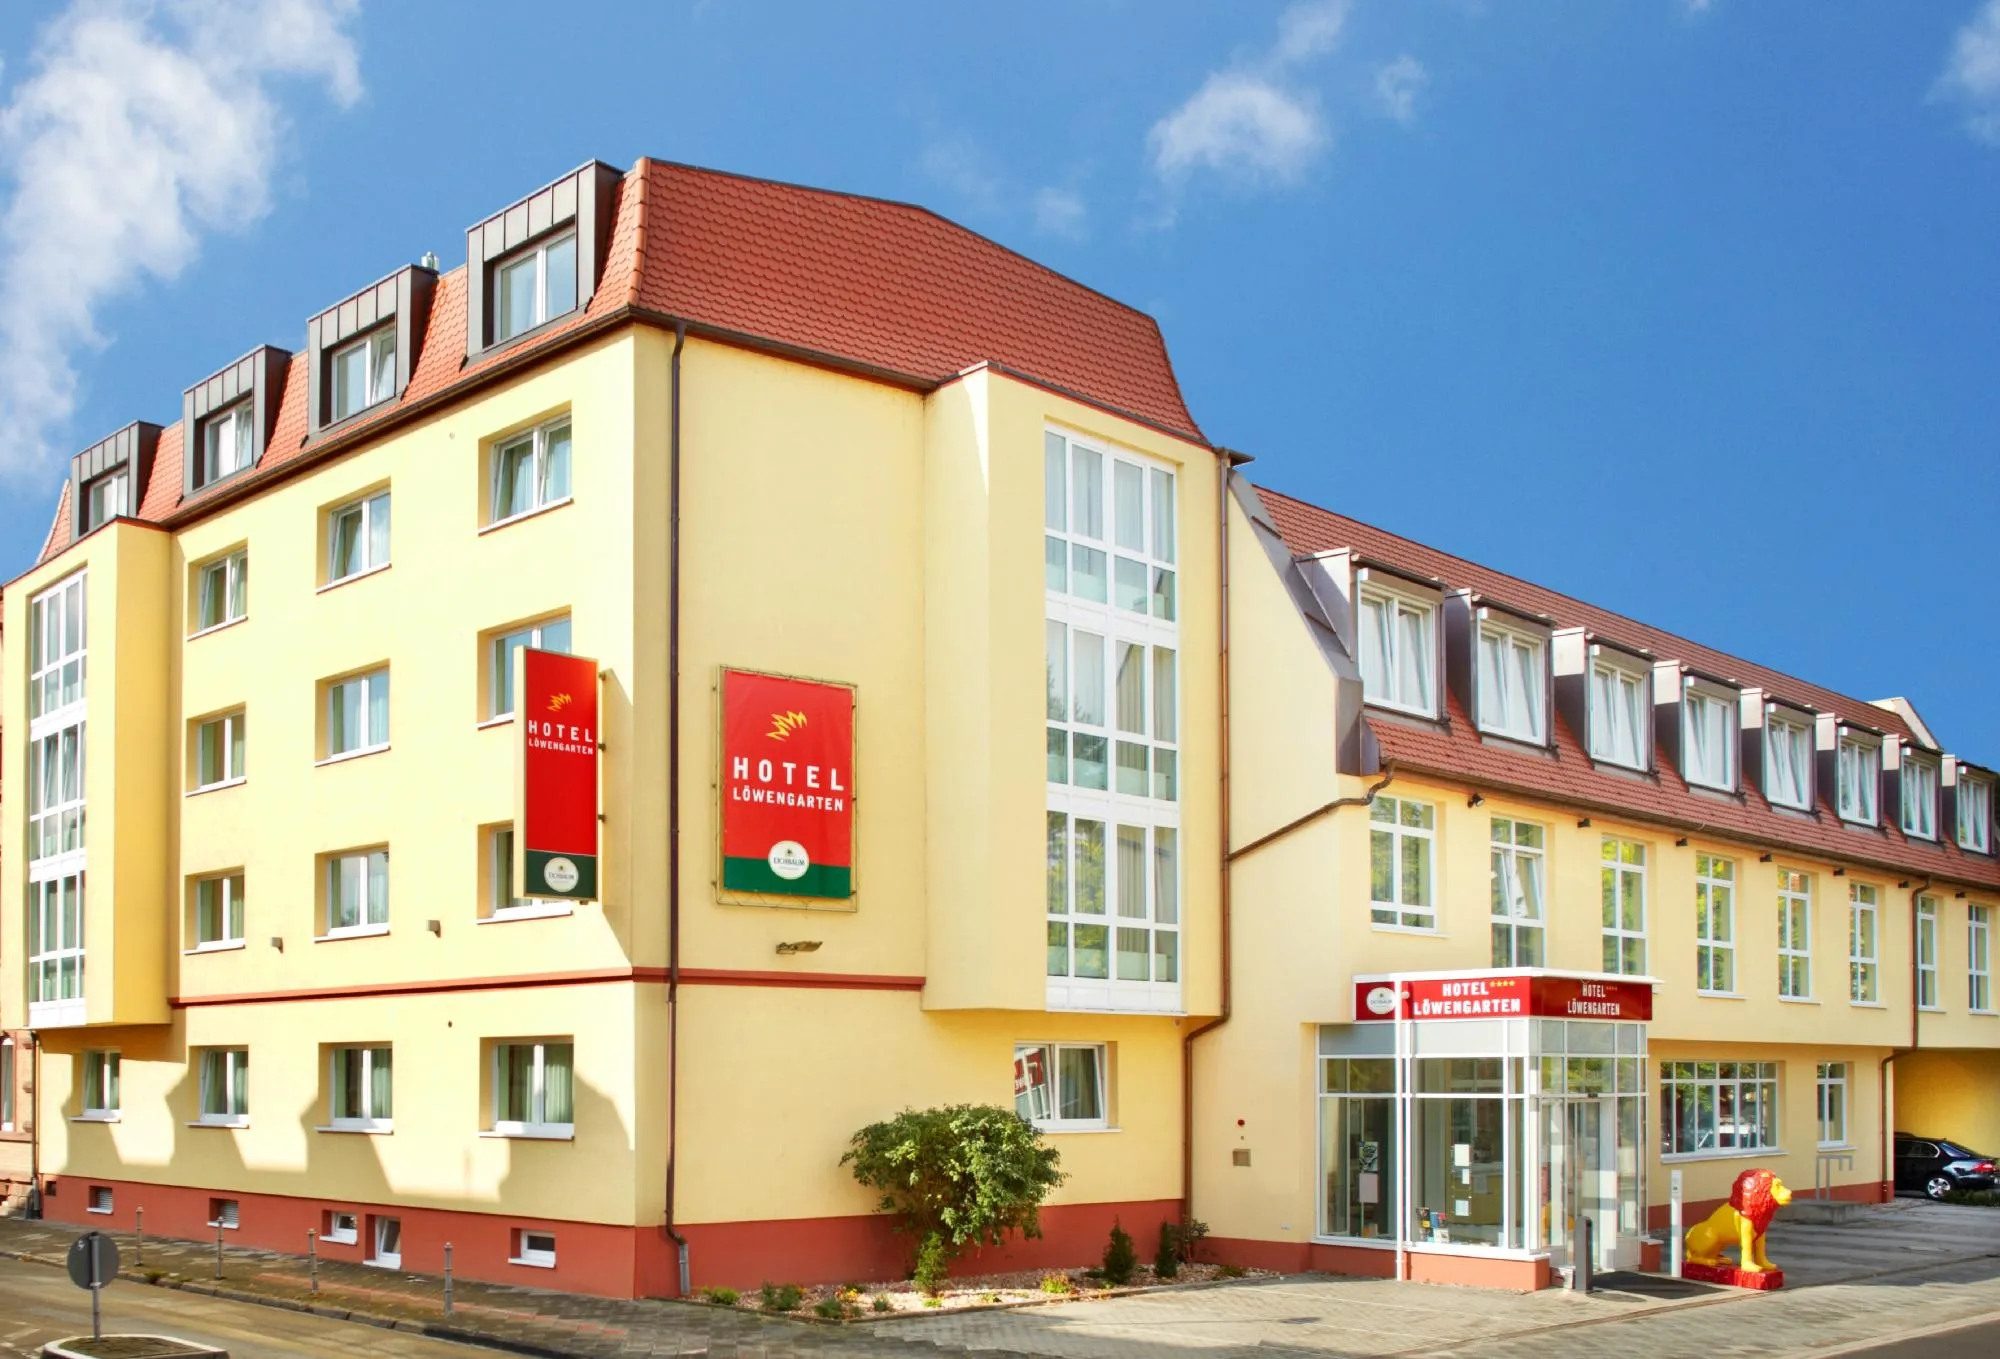 Building hotel Hotel Löwengarten